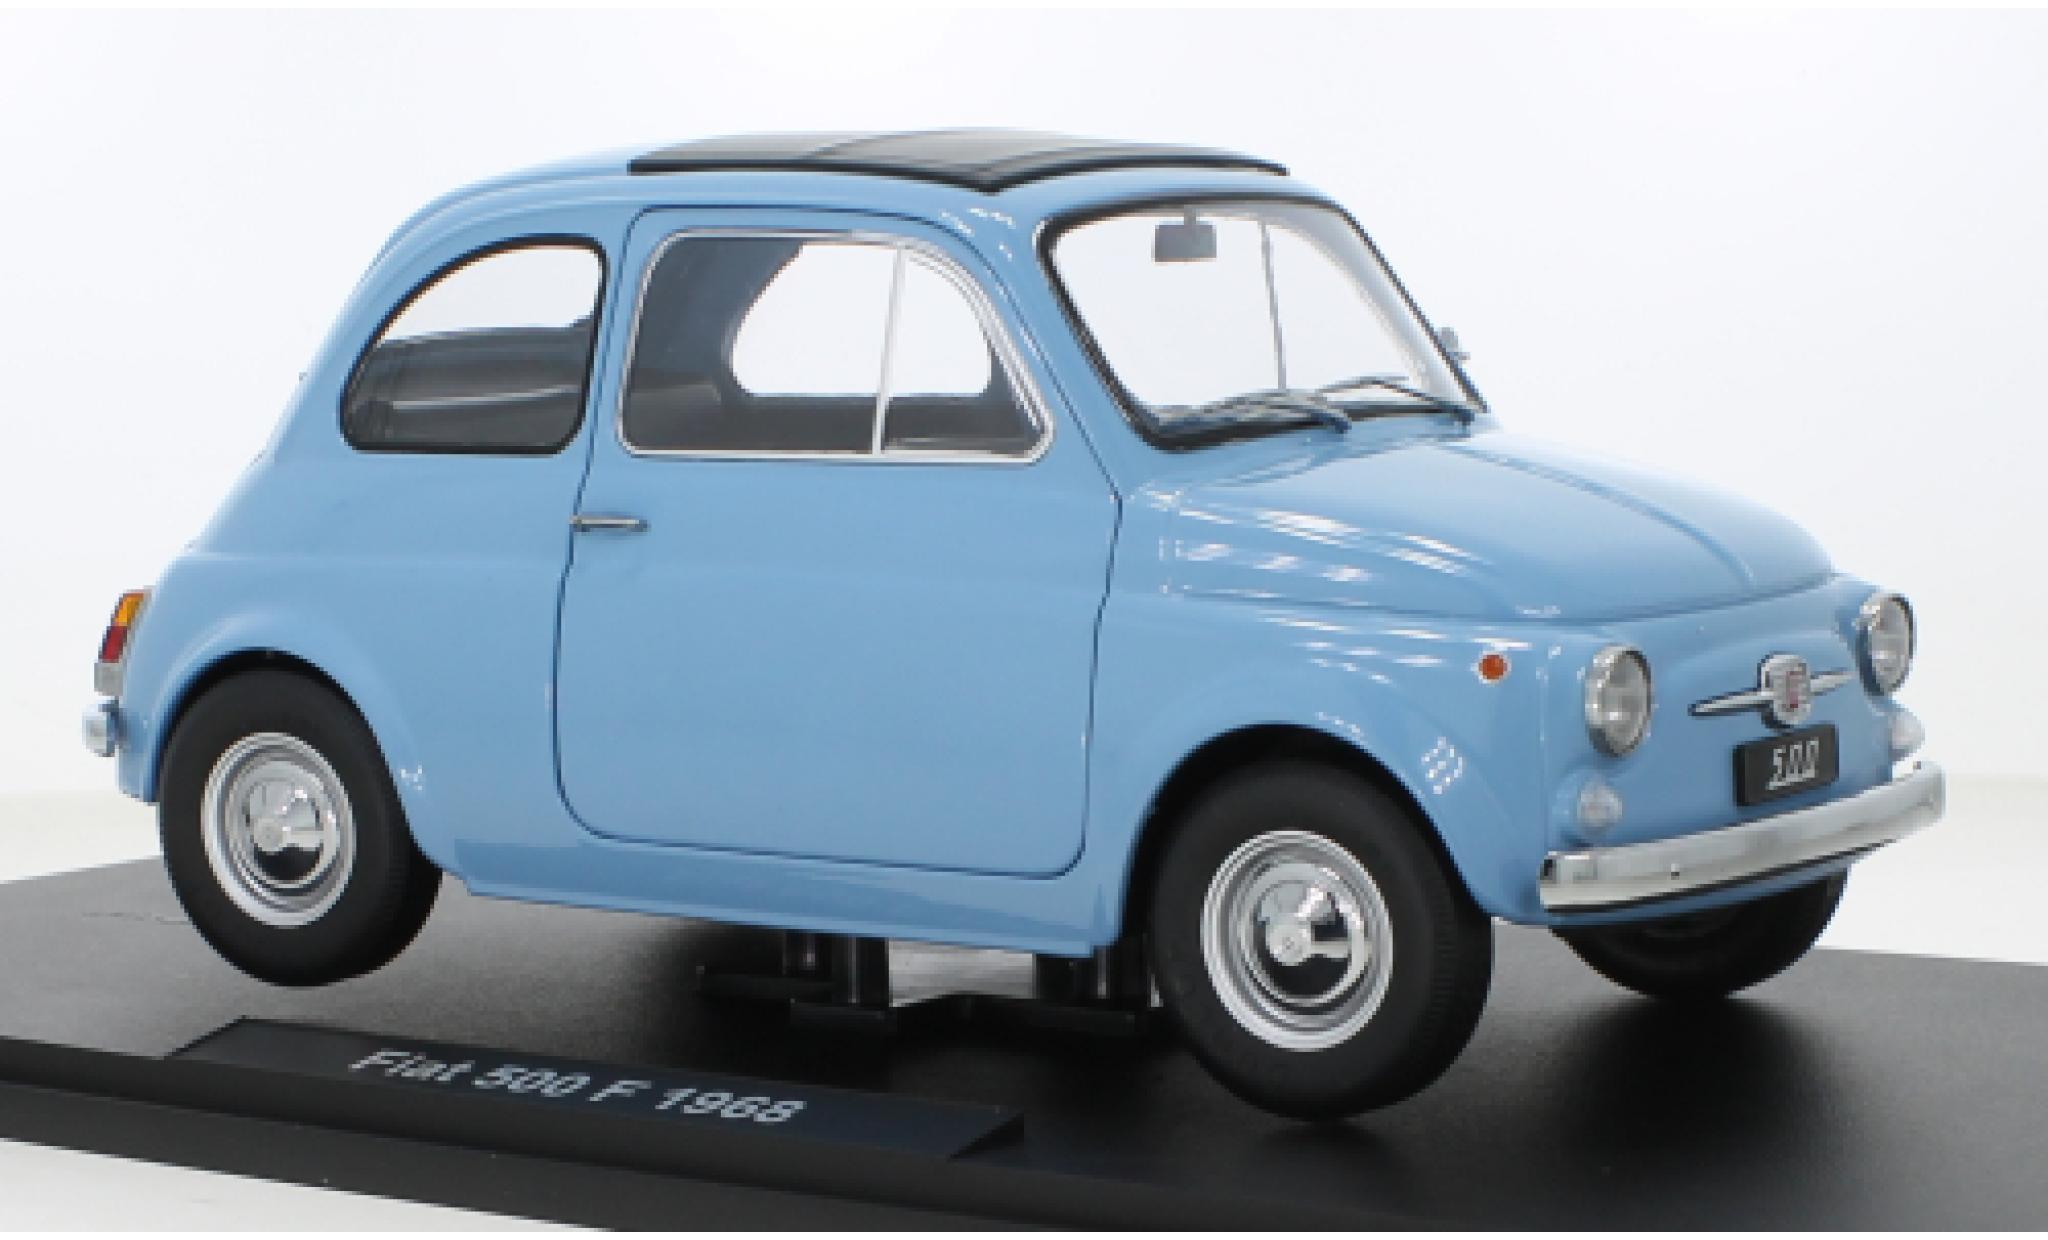 Modellino in miniatura Fiat 500 1/12 KK Scale F blu 1968 - Modellini -automobile.it